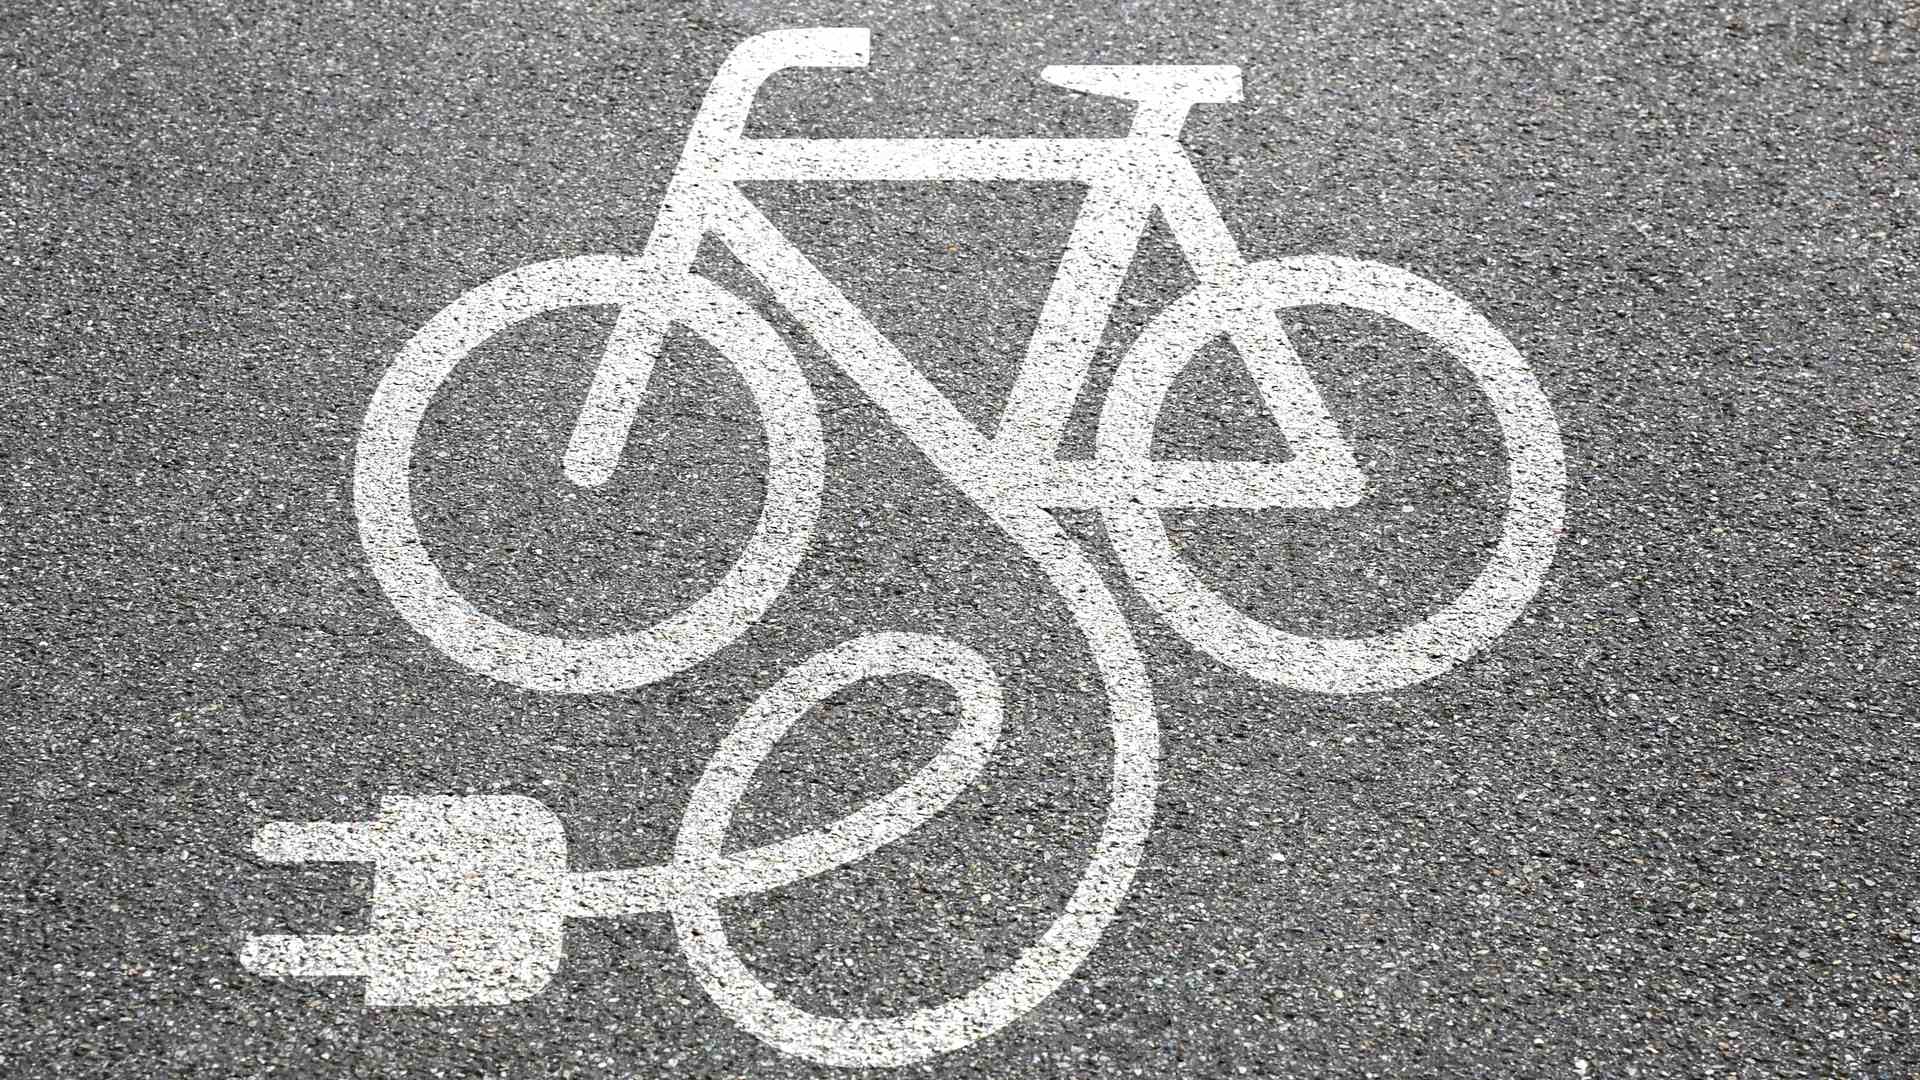 Uma bicicleta elétrica desenhada no asfalto